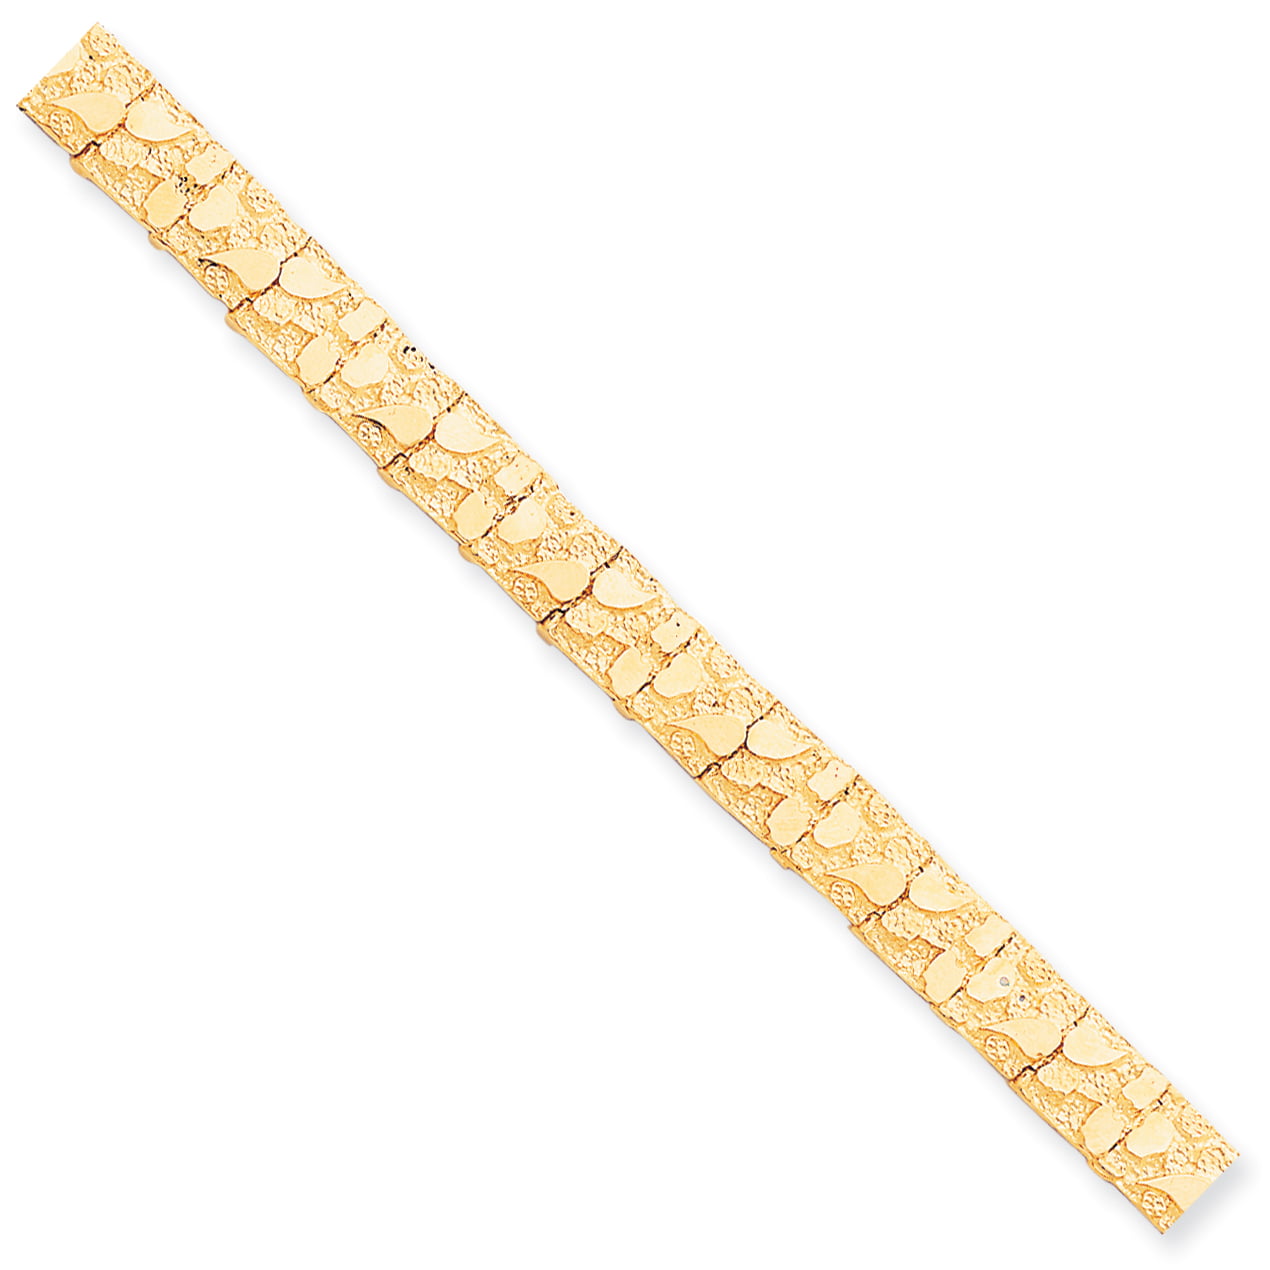 10K Gold Nugget Bracelet 16mm | Be Jolie